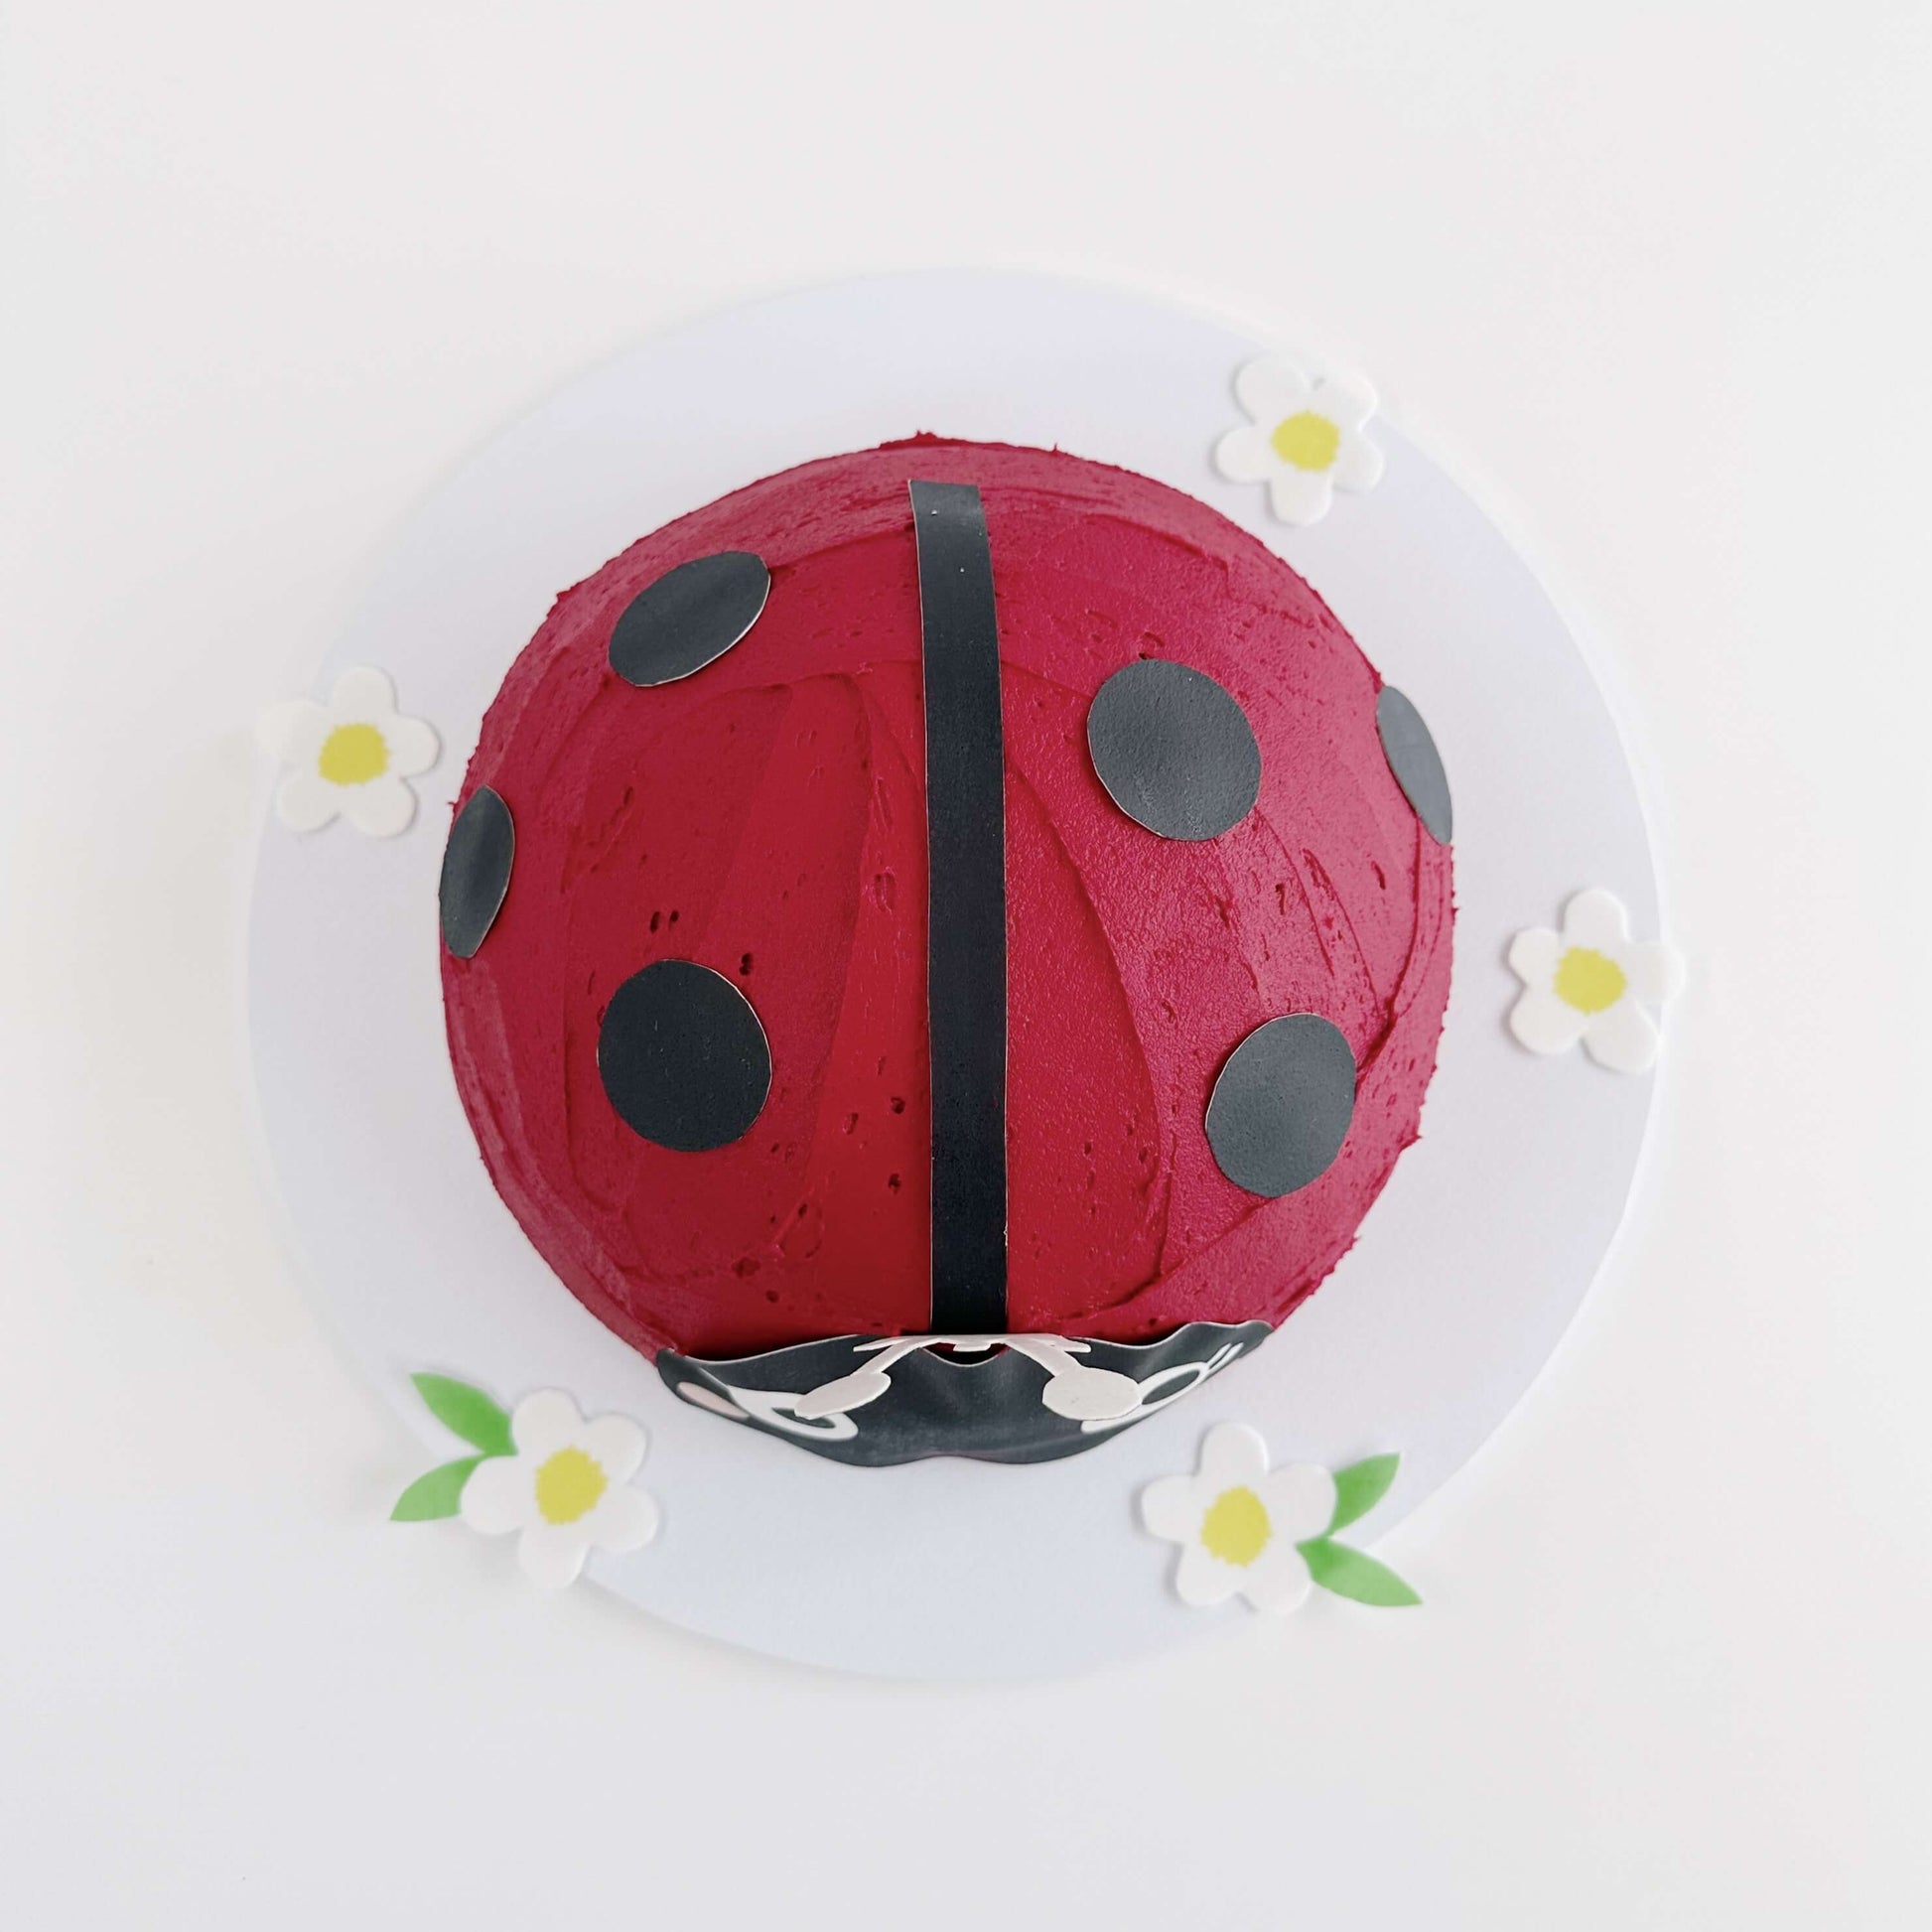 Ladybug Cake Kit